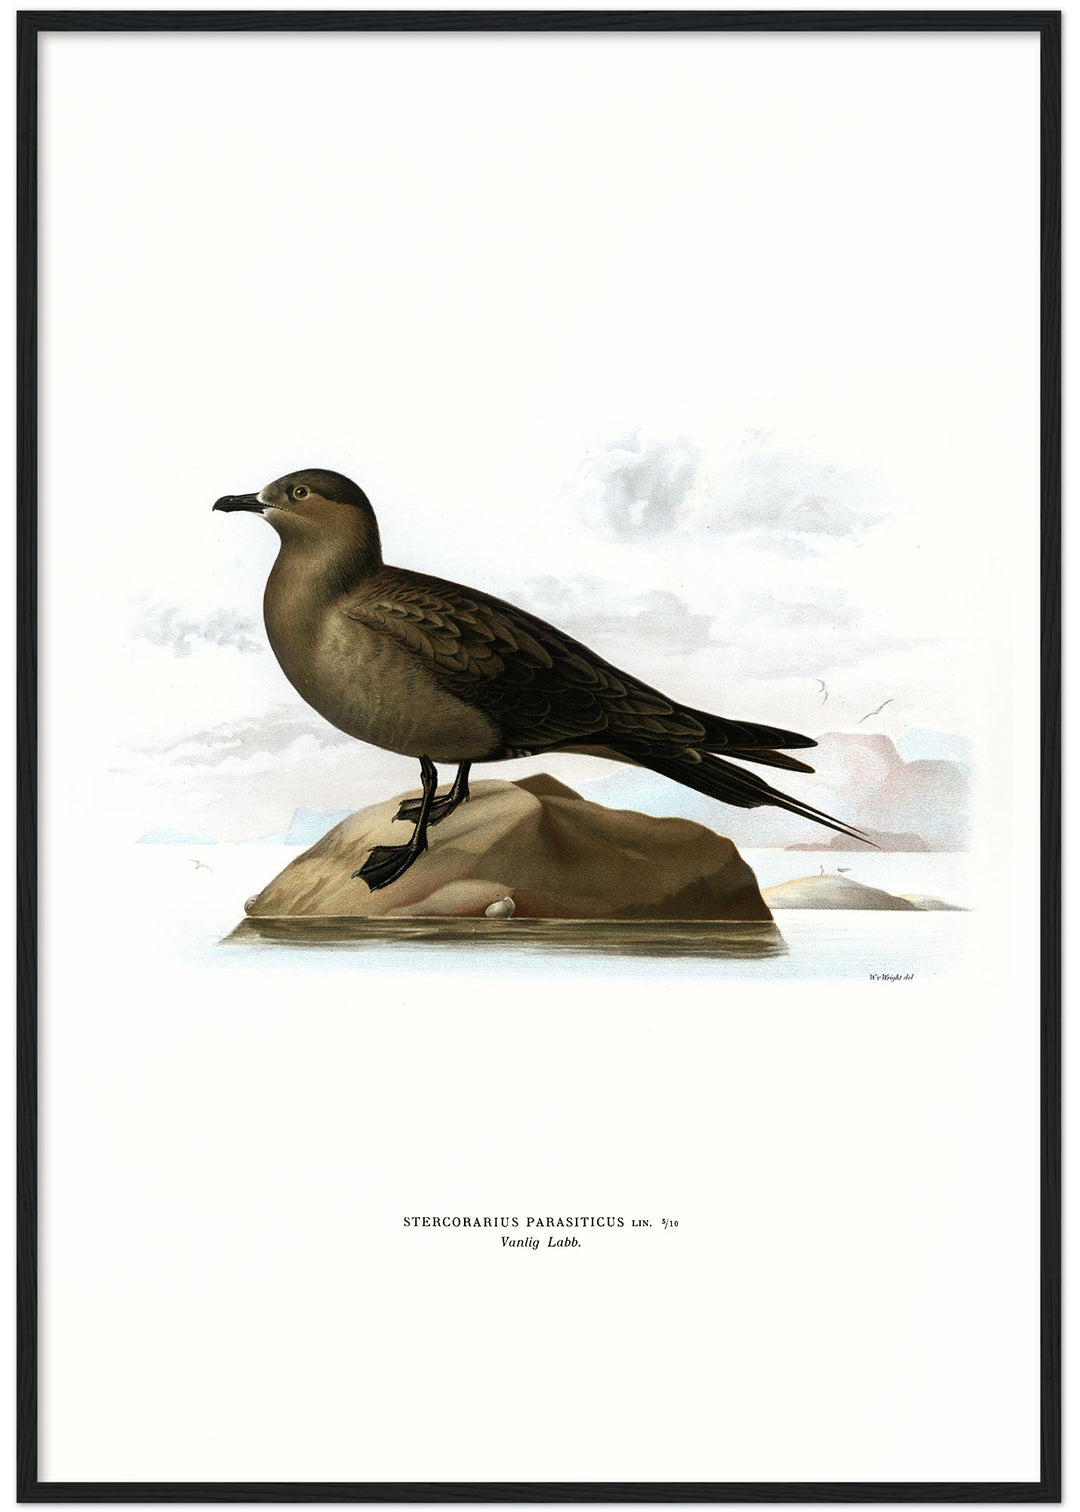 Fågeln Vanlig labb på klassisk vintage poster/affisch